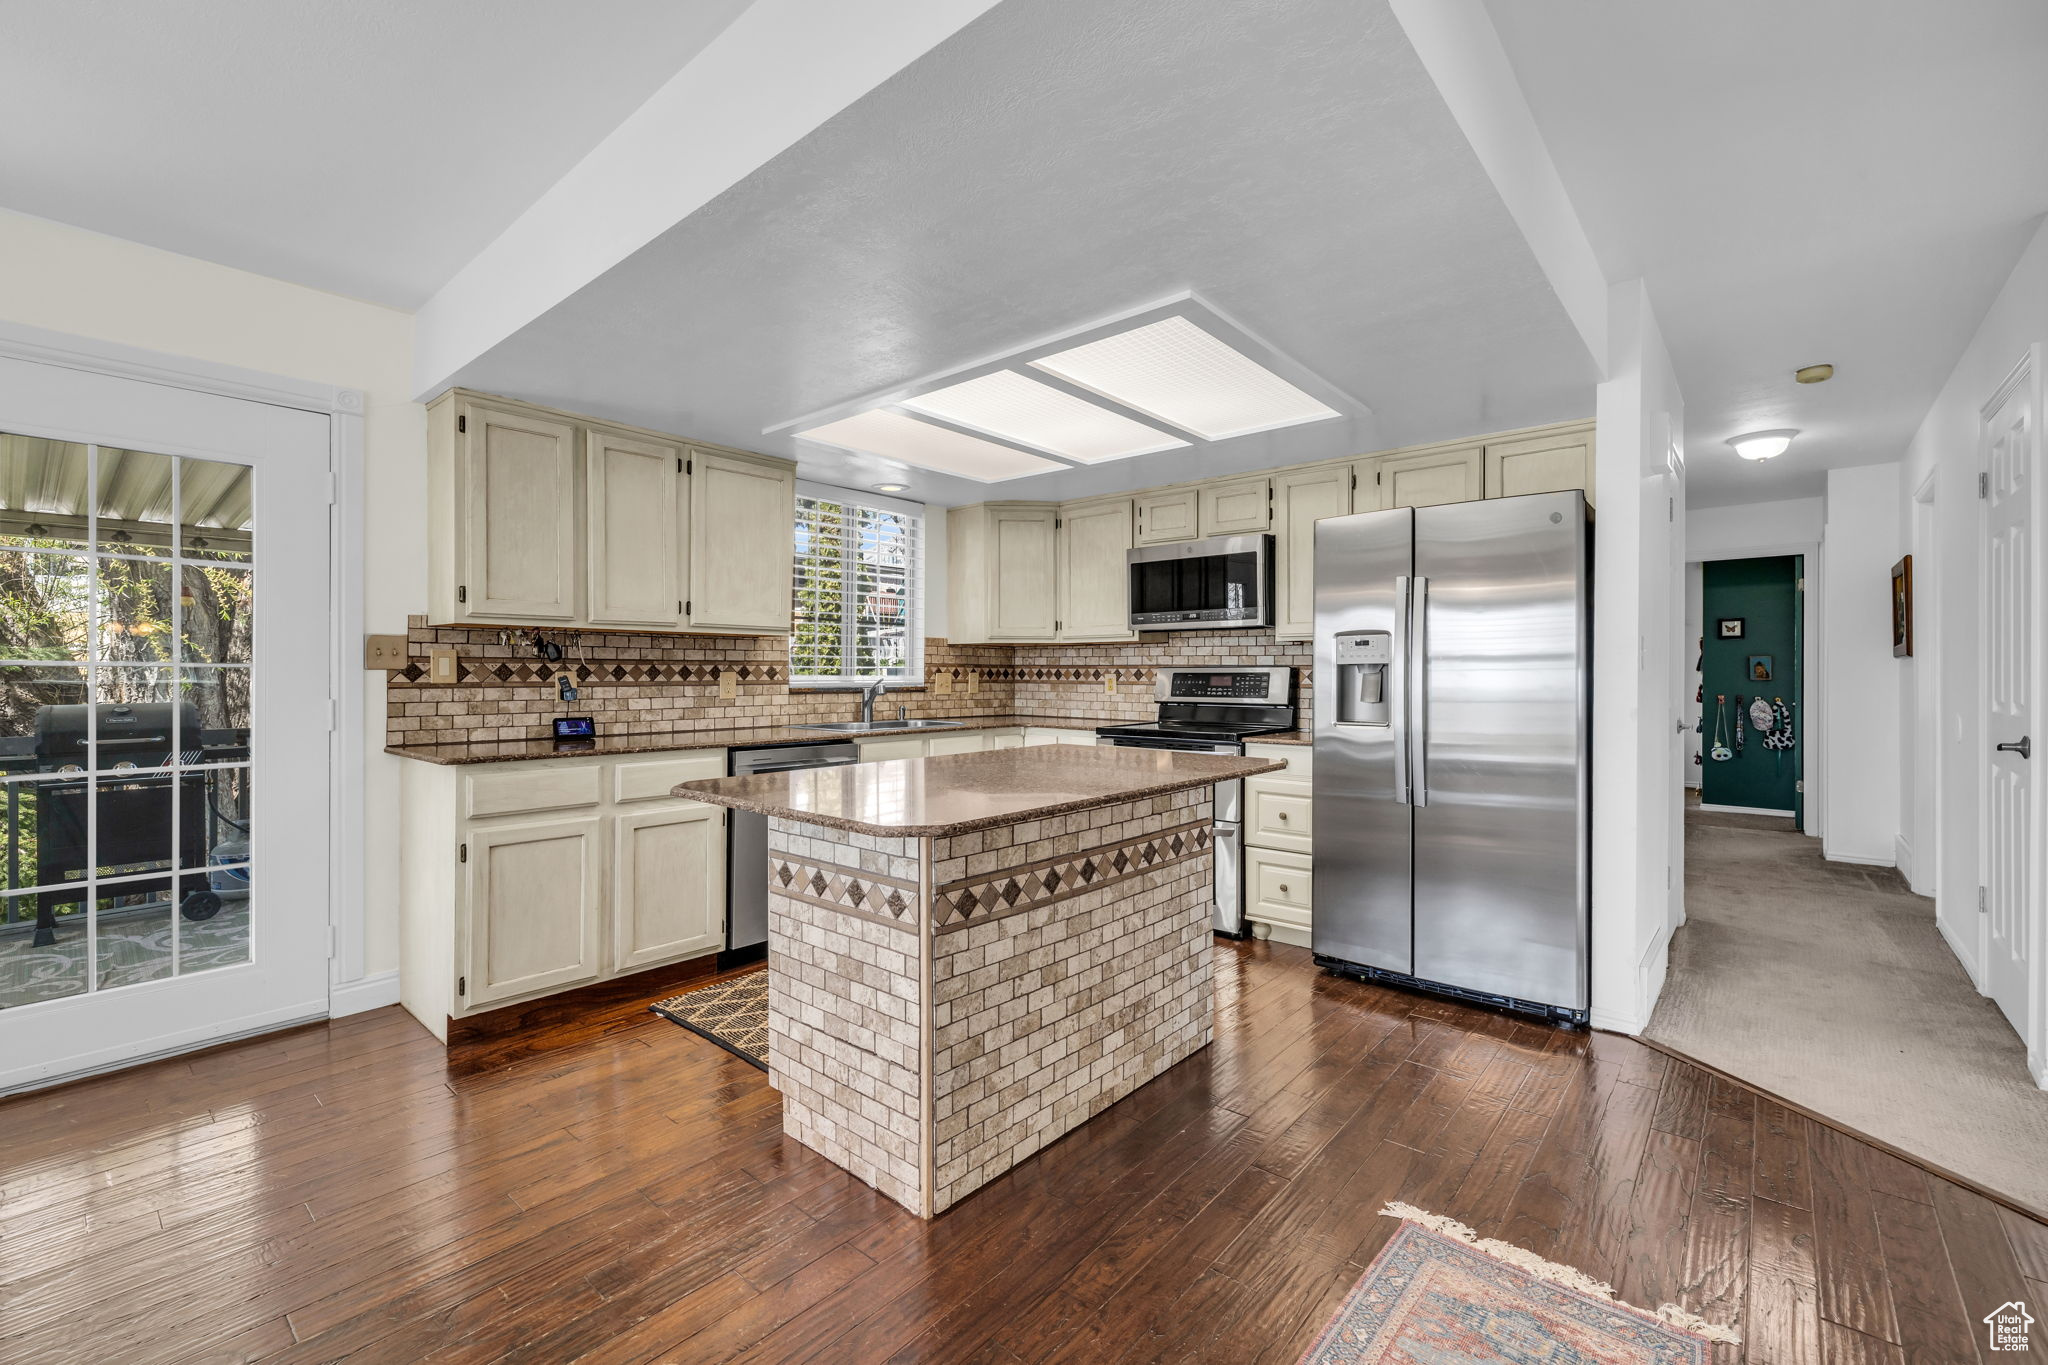 Kitchen featuring tasteful backsplash, stainless steel appliances, a center island, and dark wood-type flooring